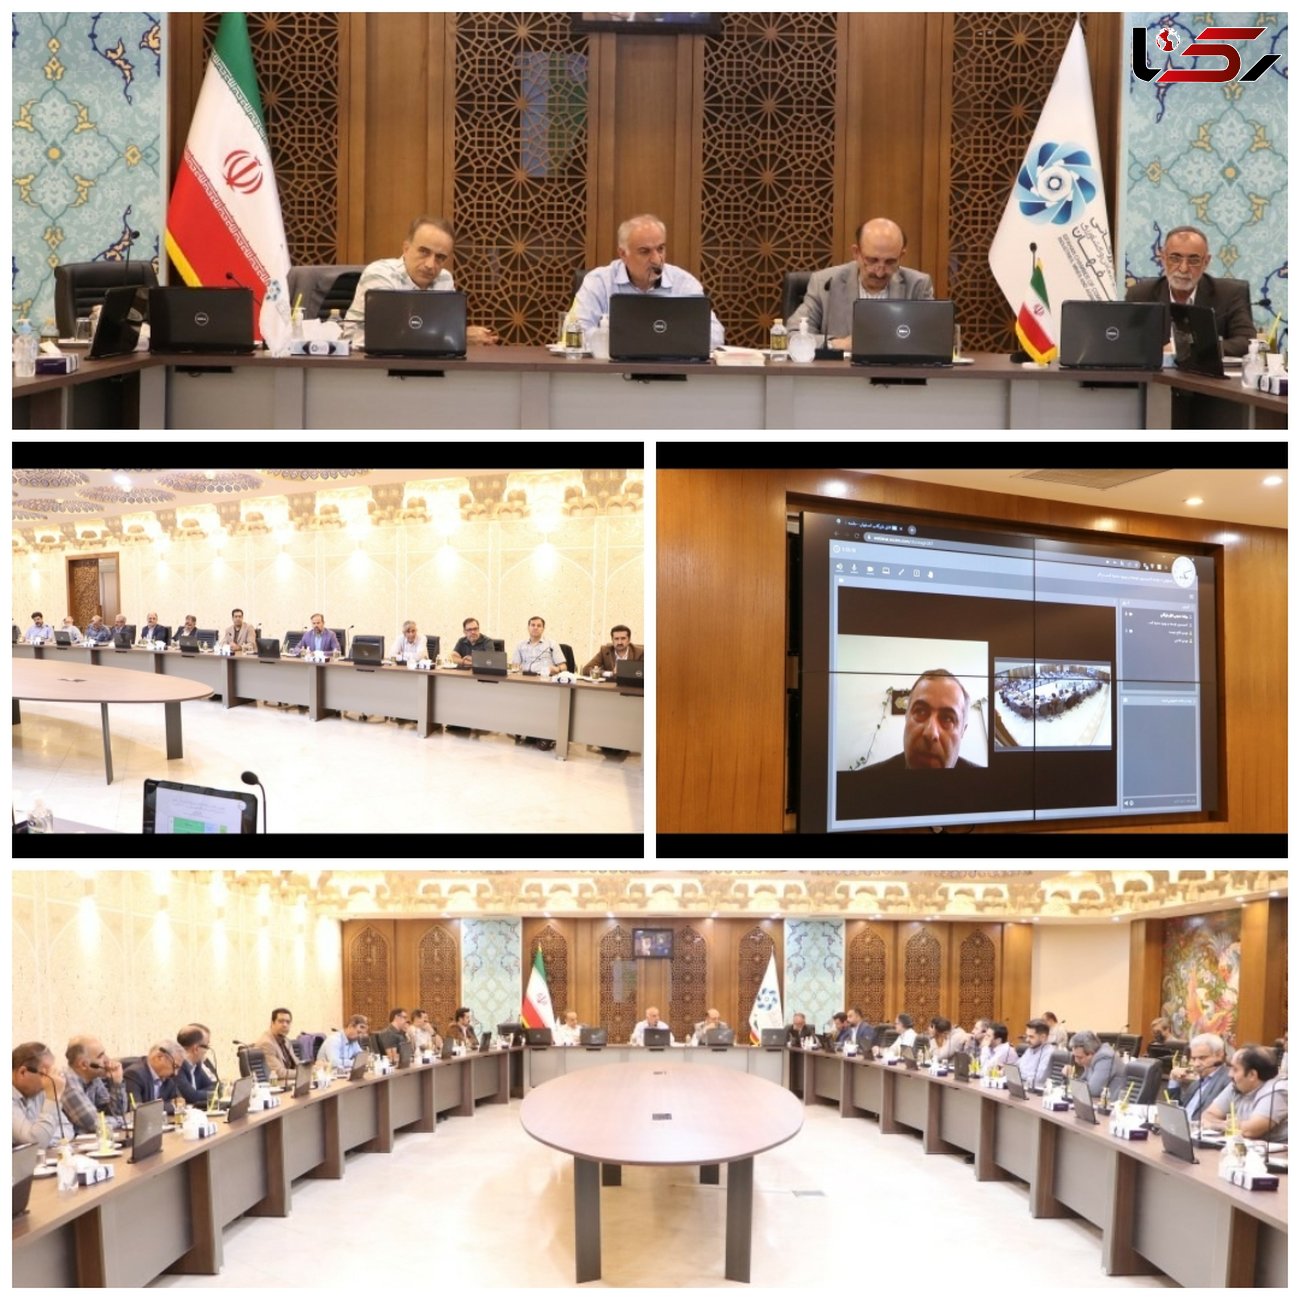 تشکیل میز خدمت در وزارت امور اقتصادی و دارایی درخواست فعالان اقتصادی اصفهان از وزیر